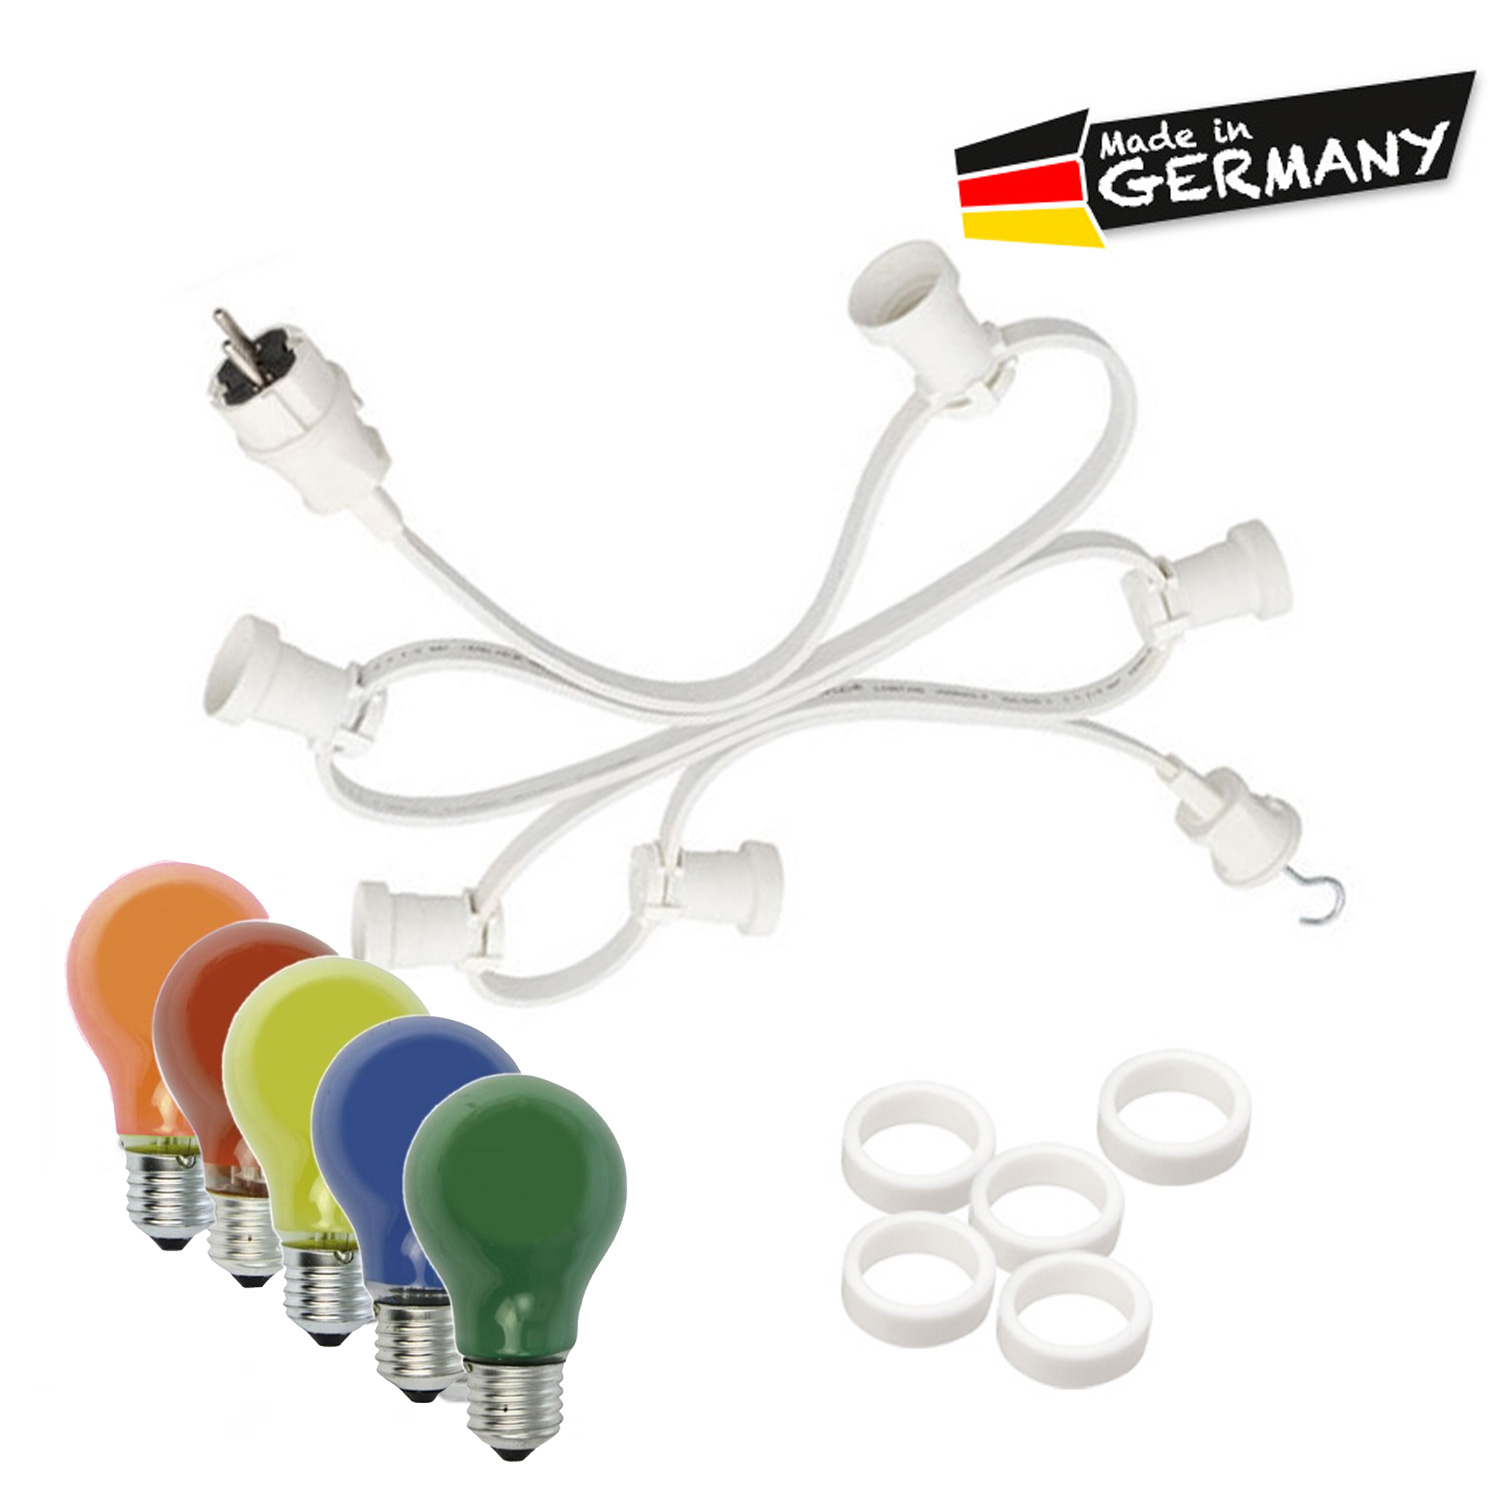 Illu-/Partylichterkette 30m - Außenlichterkette weiß - Made in Germany - 30 x bunte 25W Glühlampen